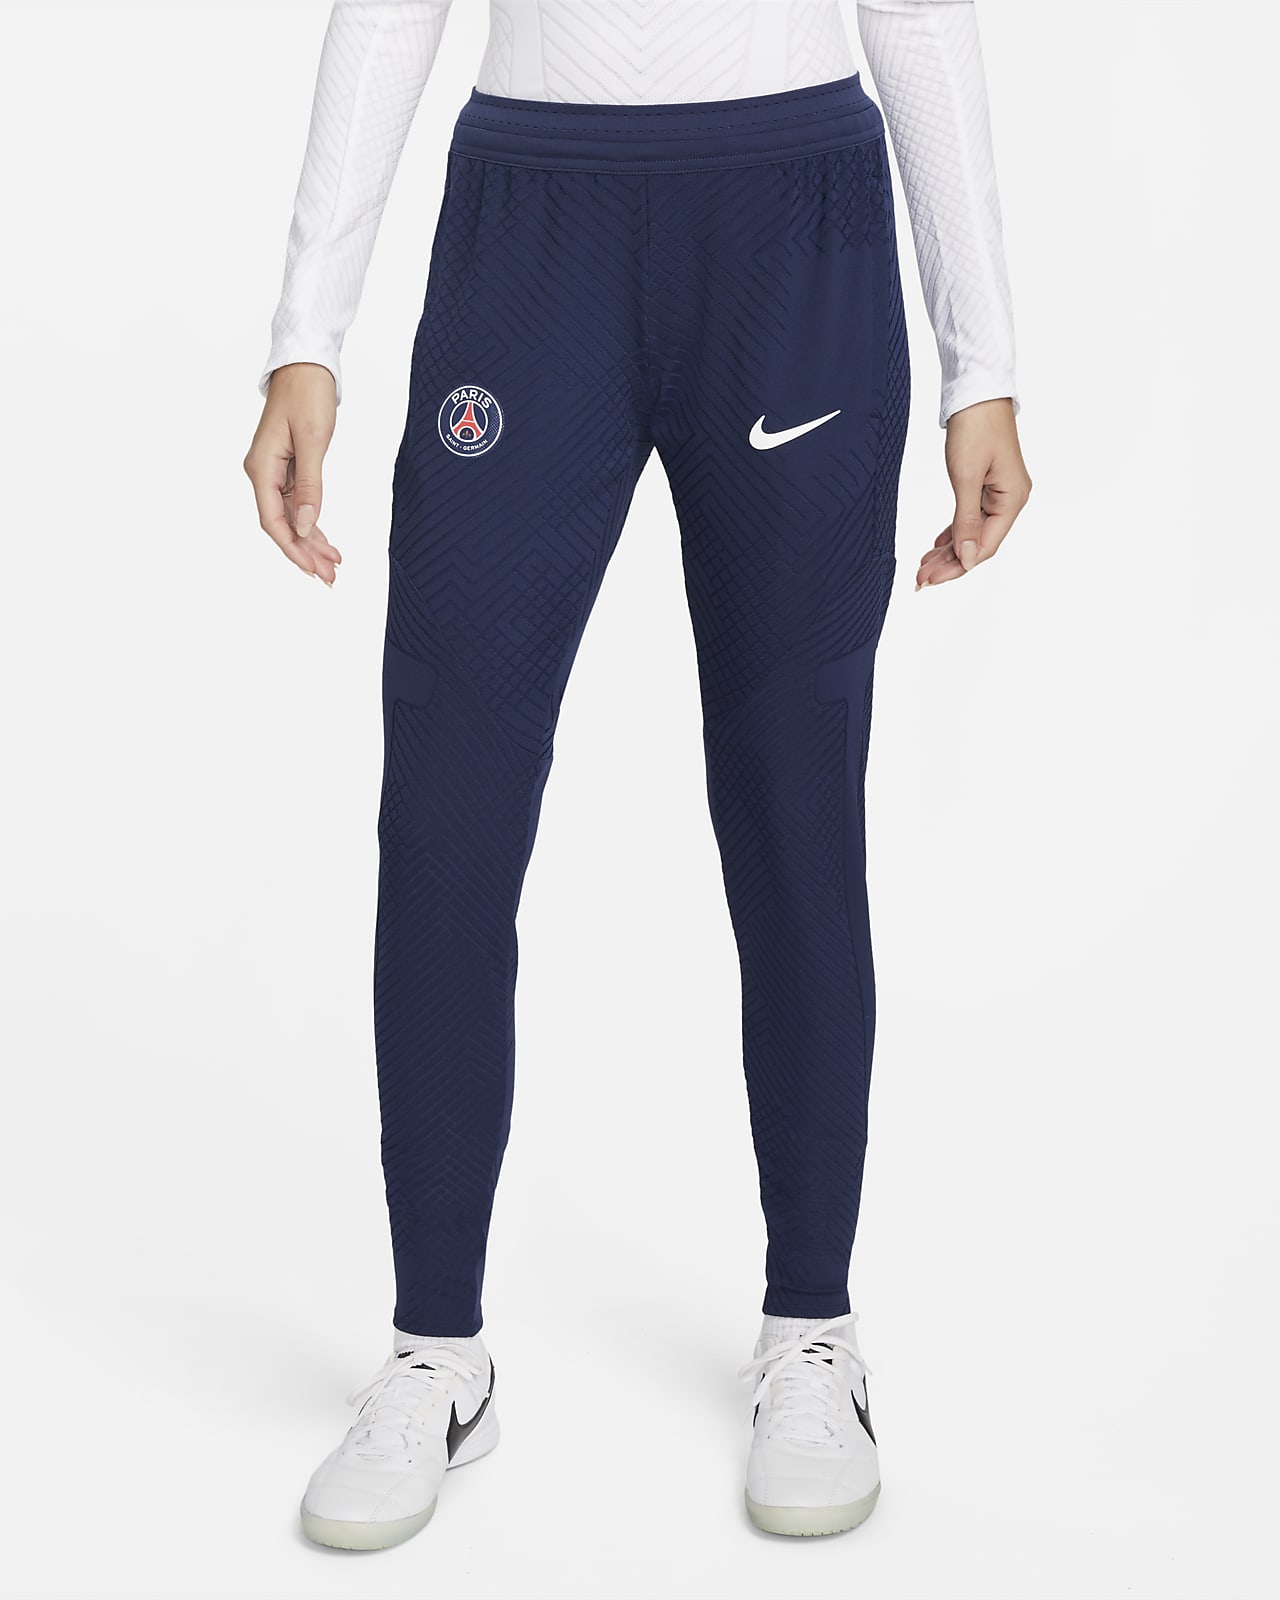 Festival Planeet delicatesse Paris Saint-Germain Strike Elite Nike Dri-FIT ADV voetbalbroek voor dames.  Nike BE